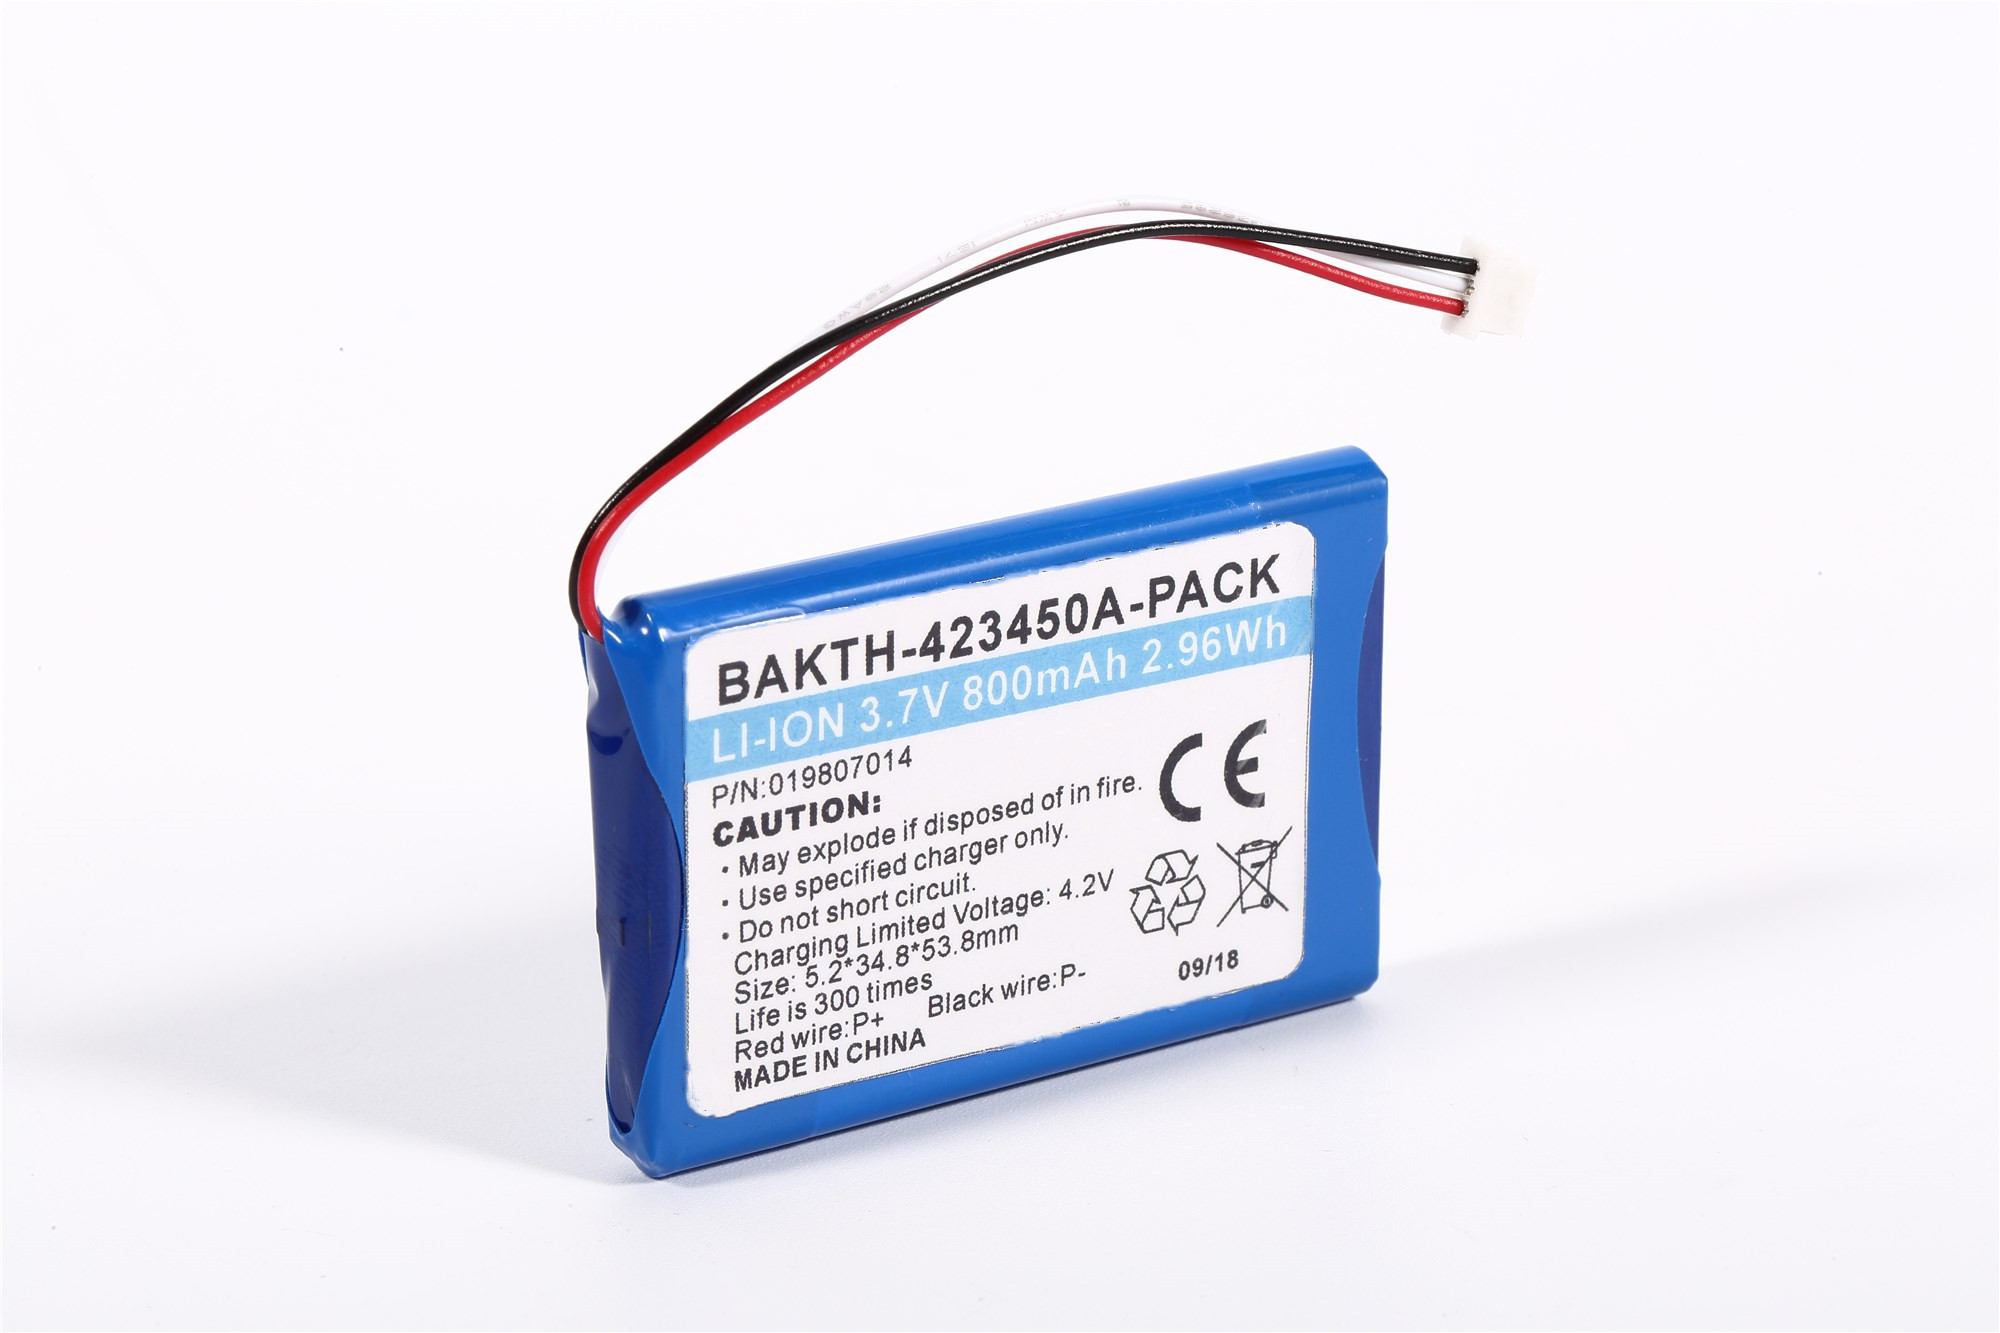 锂离子电池组Bakth-423450-PACK 3.7V 800mAh 